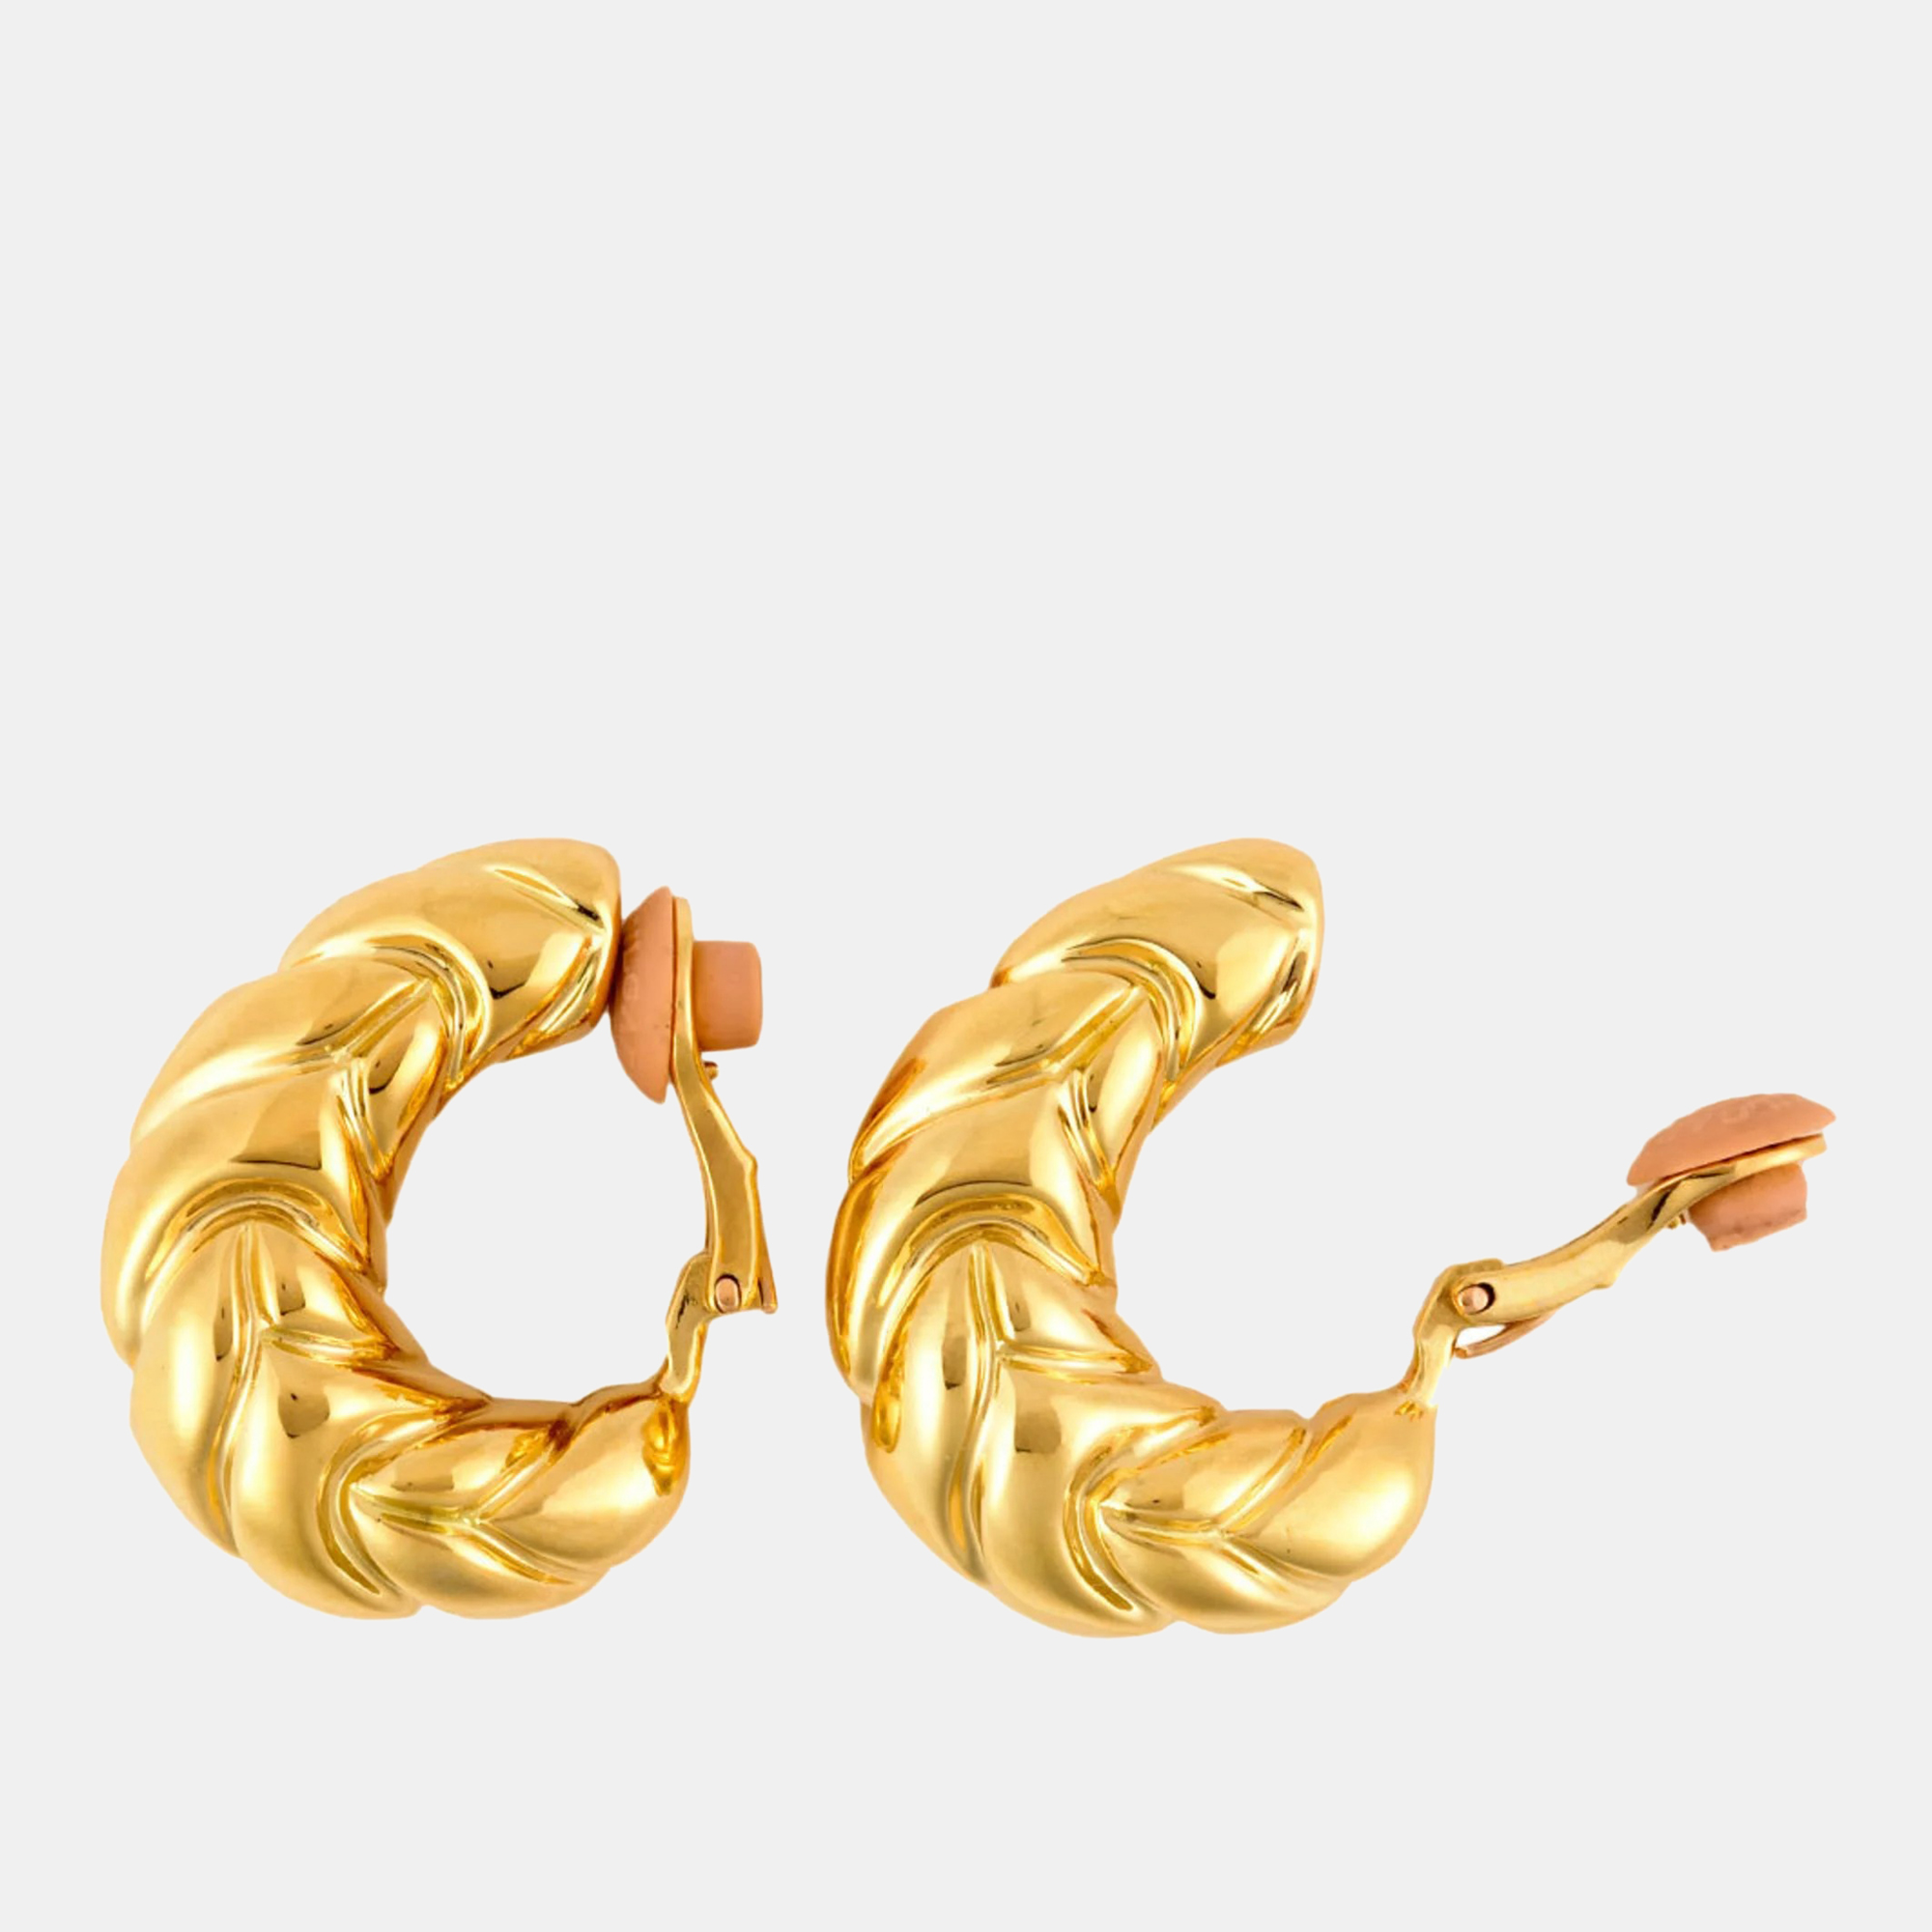 Bvlgari 18K Yellow Gold Spiga Vintage Hoop Earrings